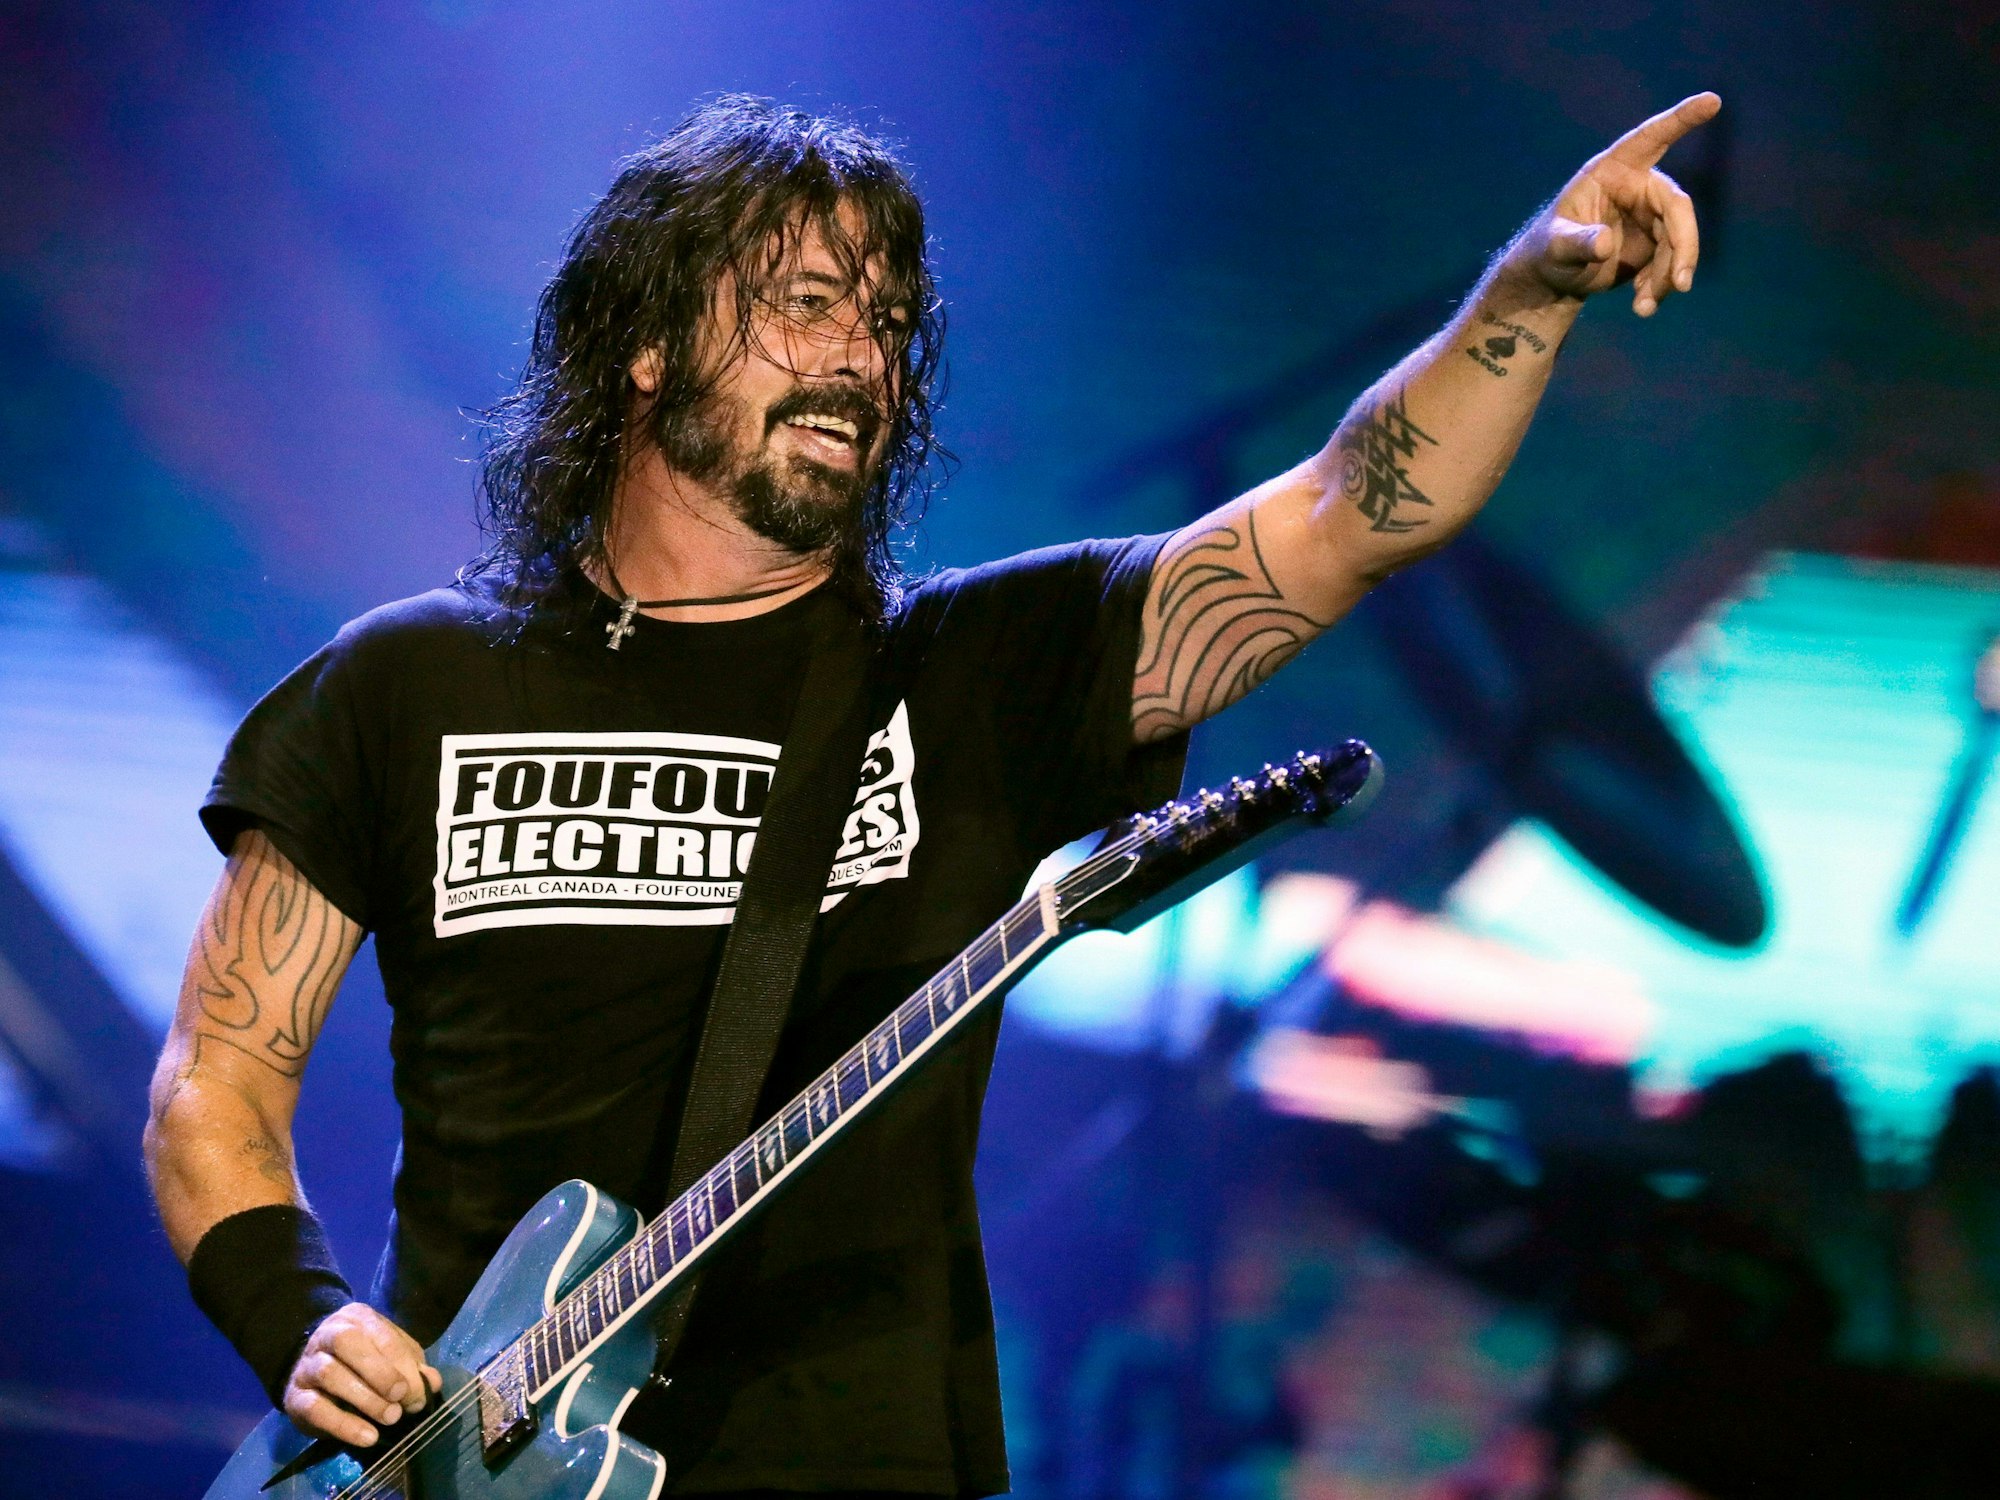 Dave Grohl am 29. September 2019 während eines Festivals in Rio de Janeiro, auf dem er mit den Foo Fighters auftrat.